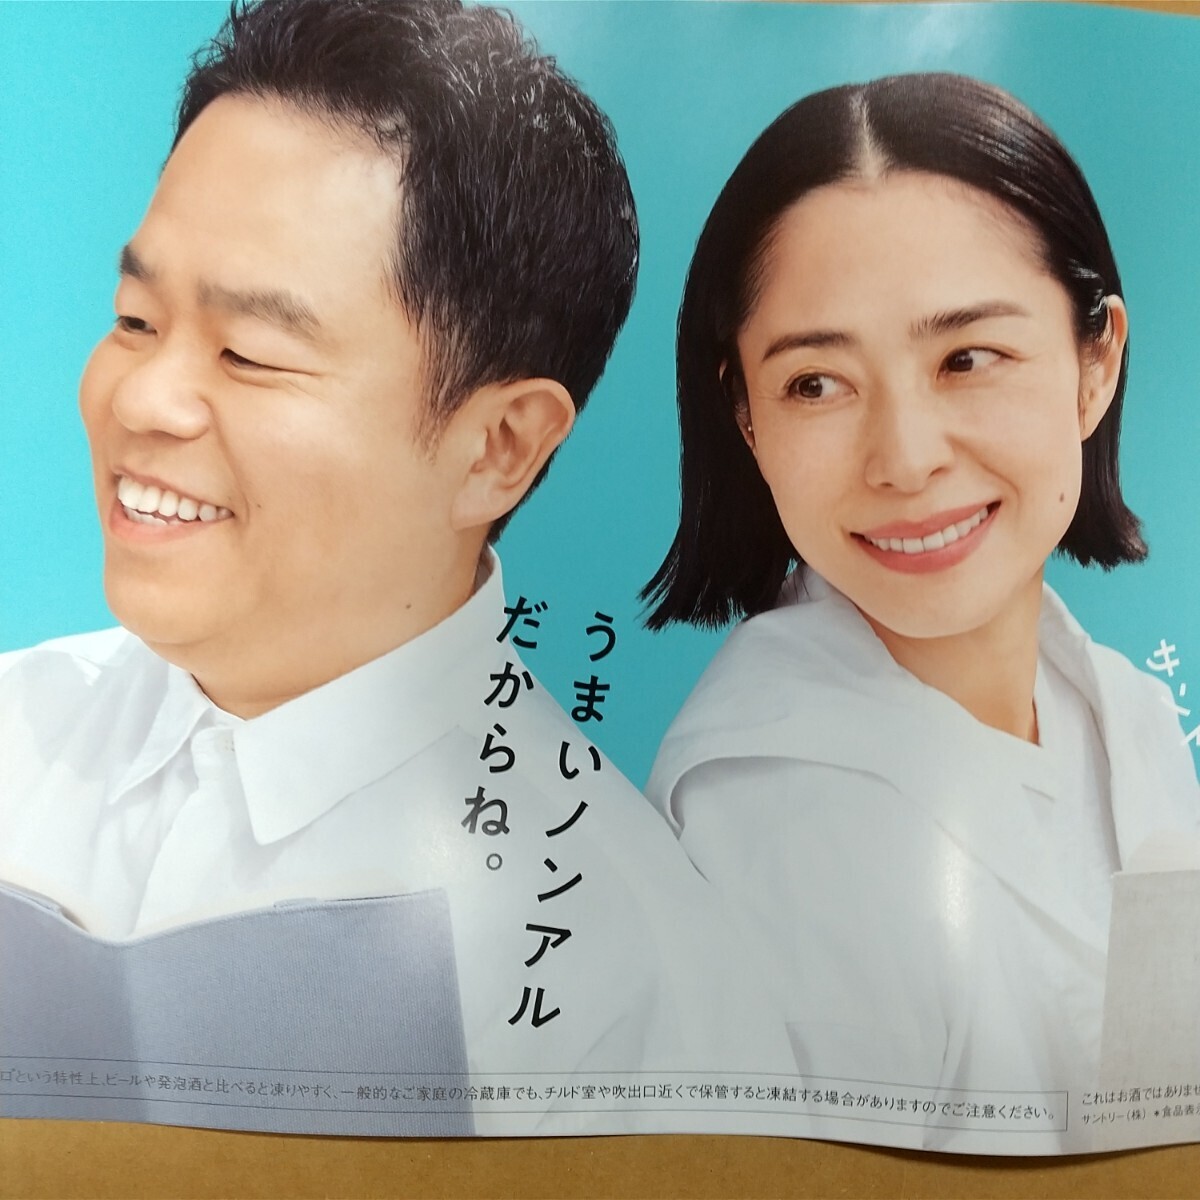 [ для бизнеса постер ] не продается Fukatsu Eri Diane Цу рисовое поле постер все свободный SUNTORY